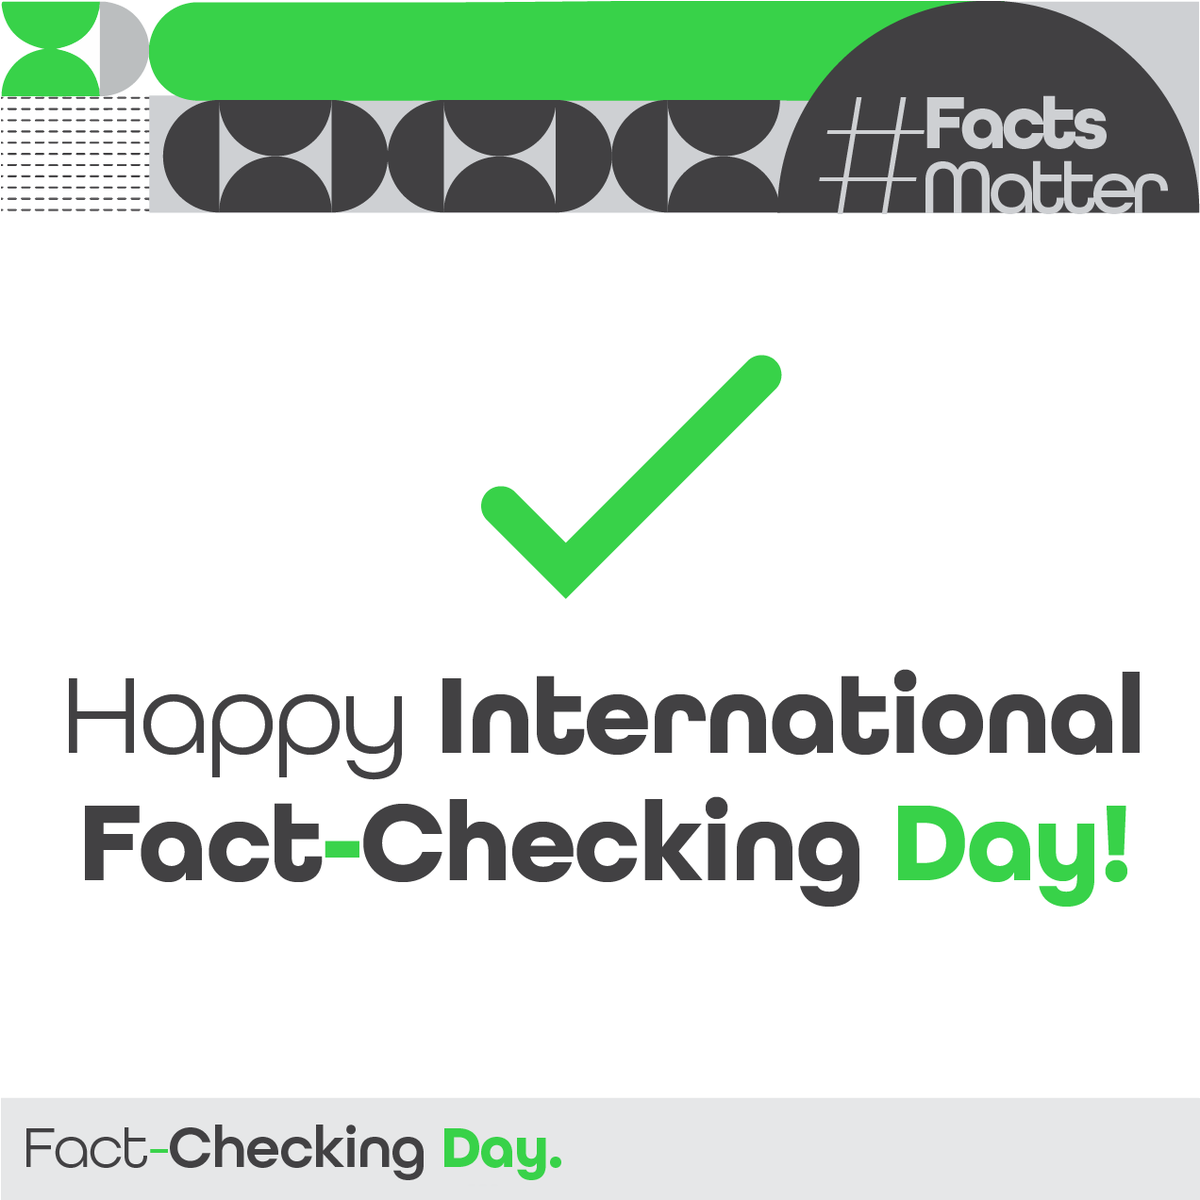 Habt einen schönen #FactCheckingDay! Es ist fix: Wir veranstalten wieder einen Faktencheck-Gipfel und zwar am 23. Mai in Wien! Dabei werden renommierte VertreterInnen aus Wissenschaft, Technik und Medien über aktuelle Themen diskutieren. Infos folgen, stay tuned! #FactsMatter